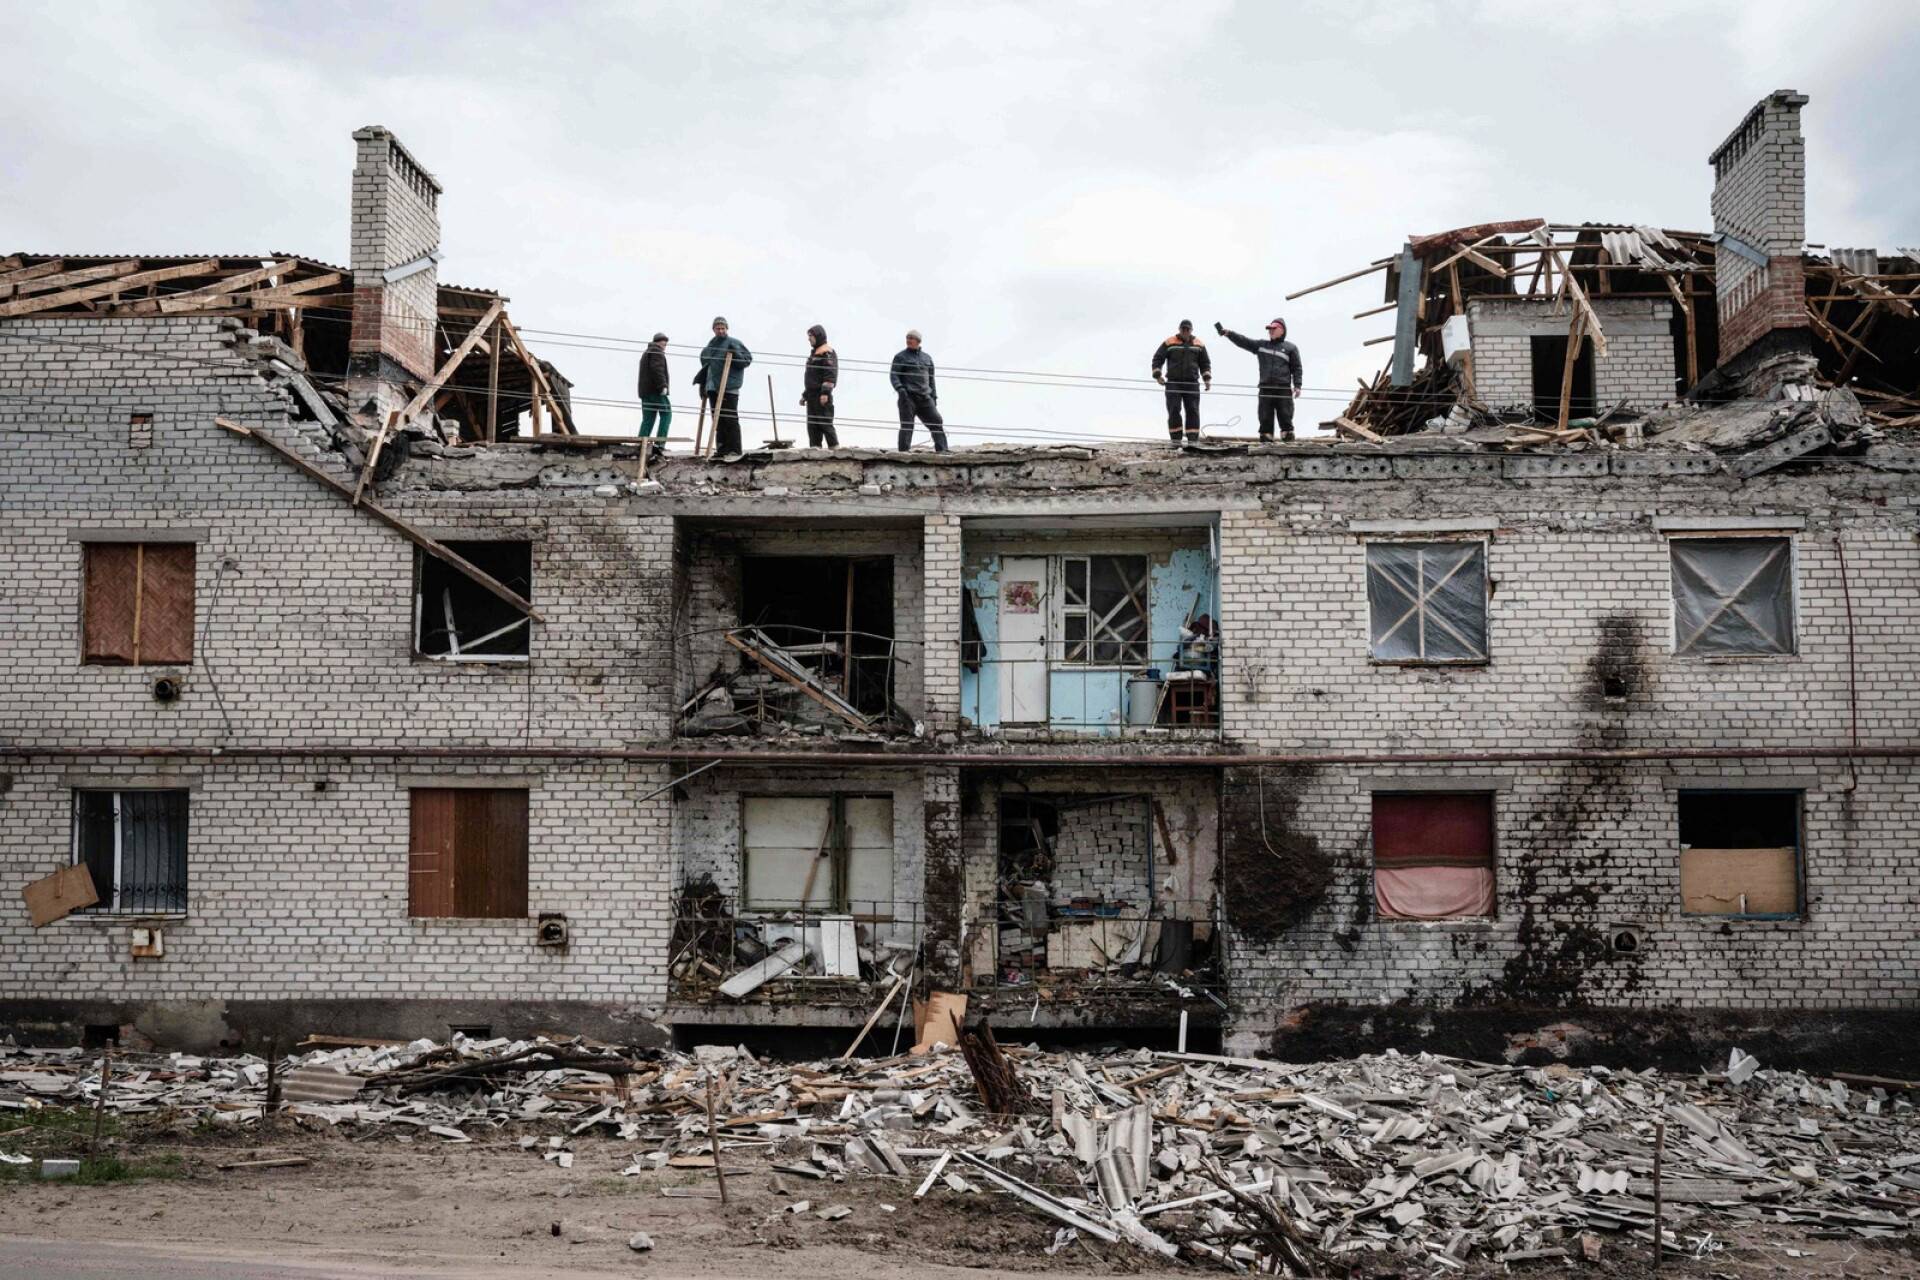 Työläisiä siivoamassa kuukautta aiemmin pommituksessa tuhoutuneen rakennuksen raunioilla Cherkaskessa, Itä-Ukrainassa.